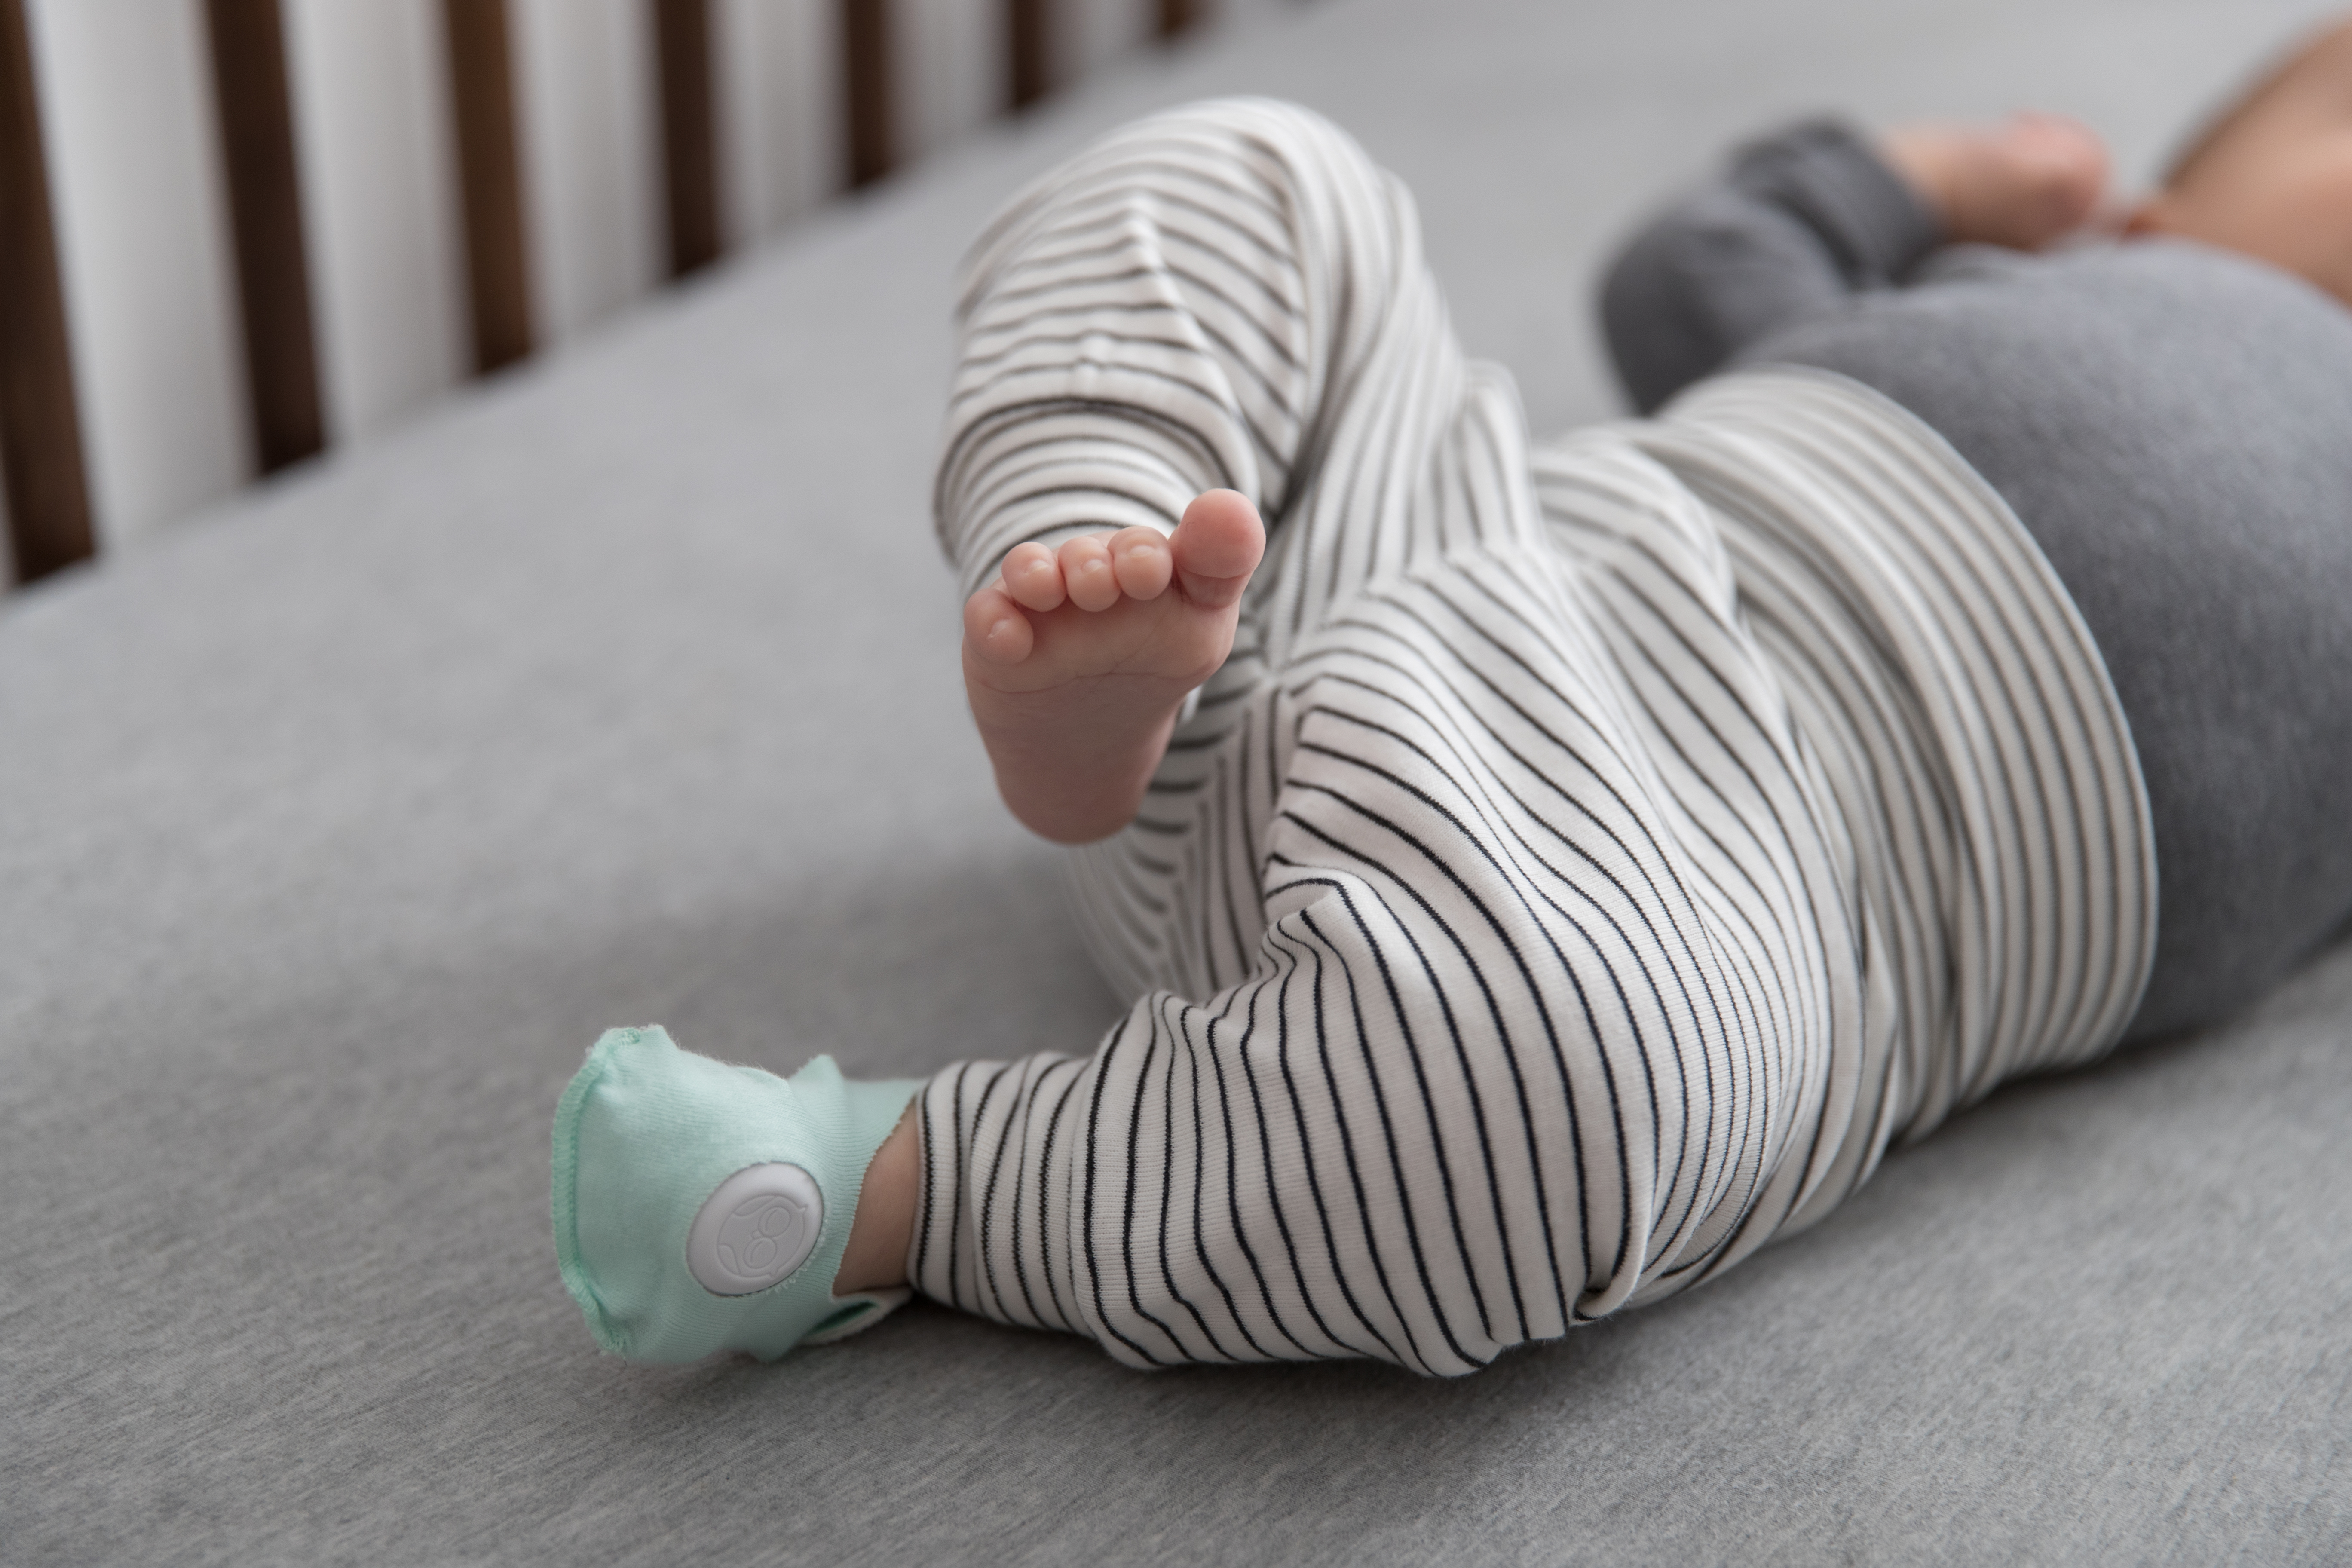 baby monitors may be harmful 